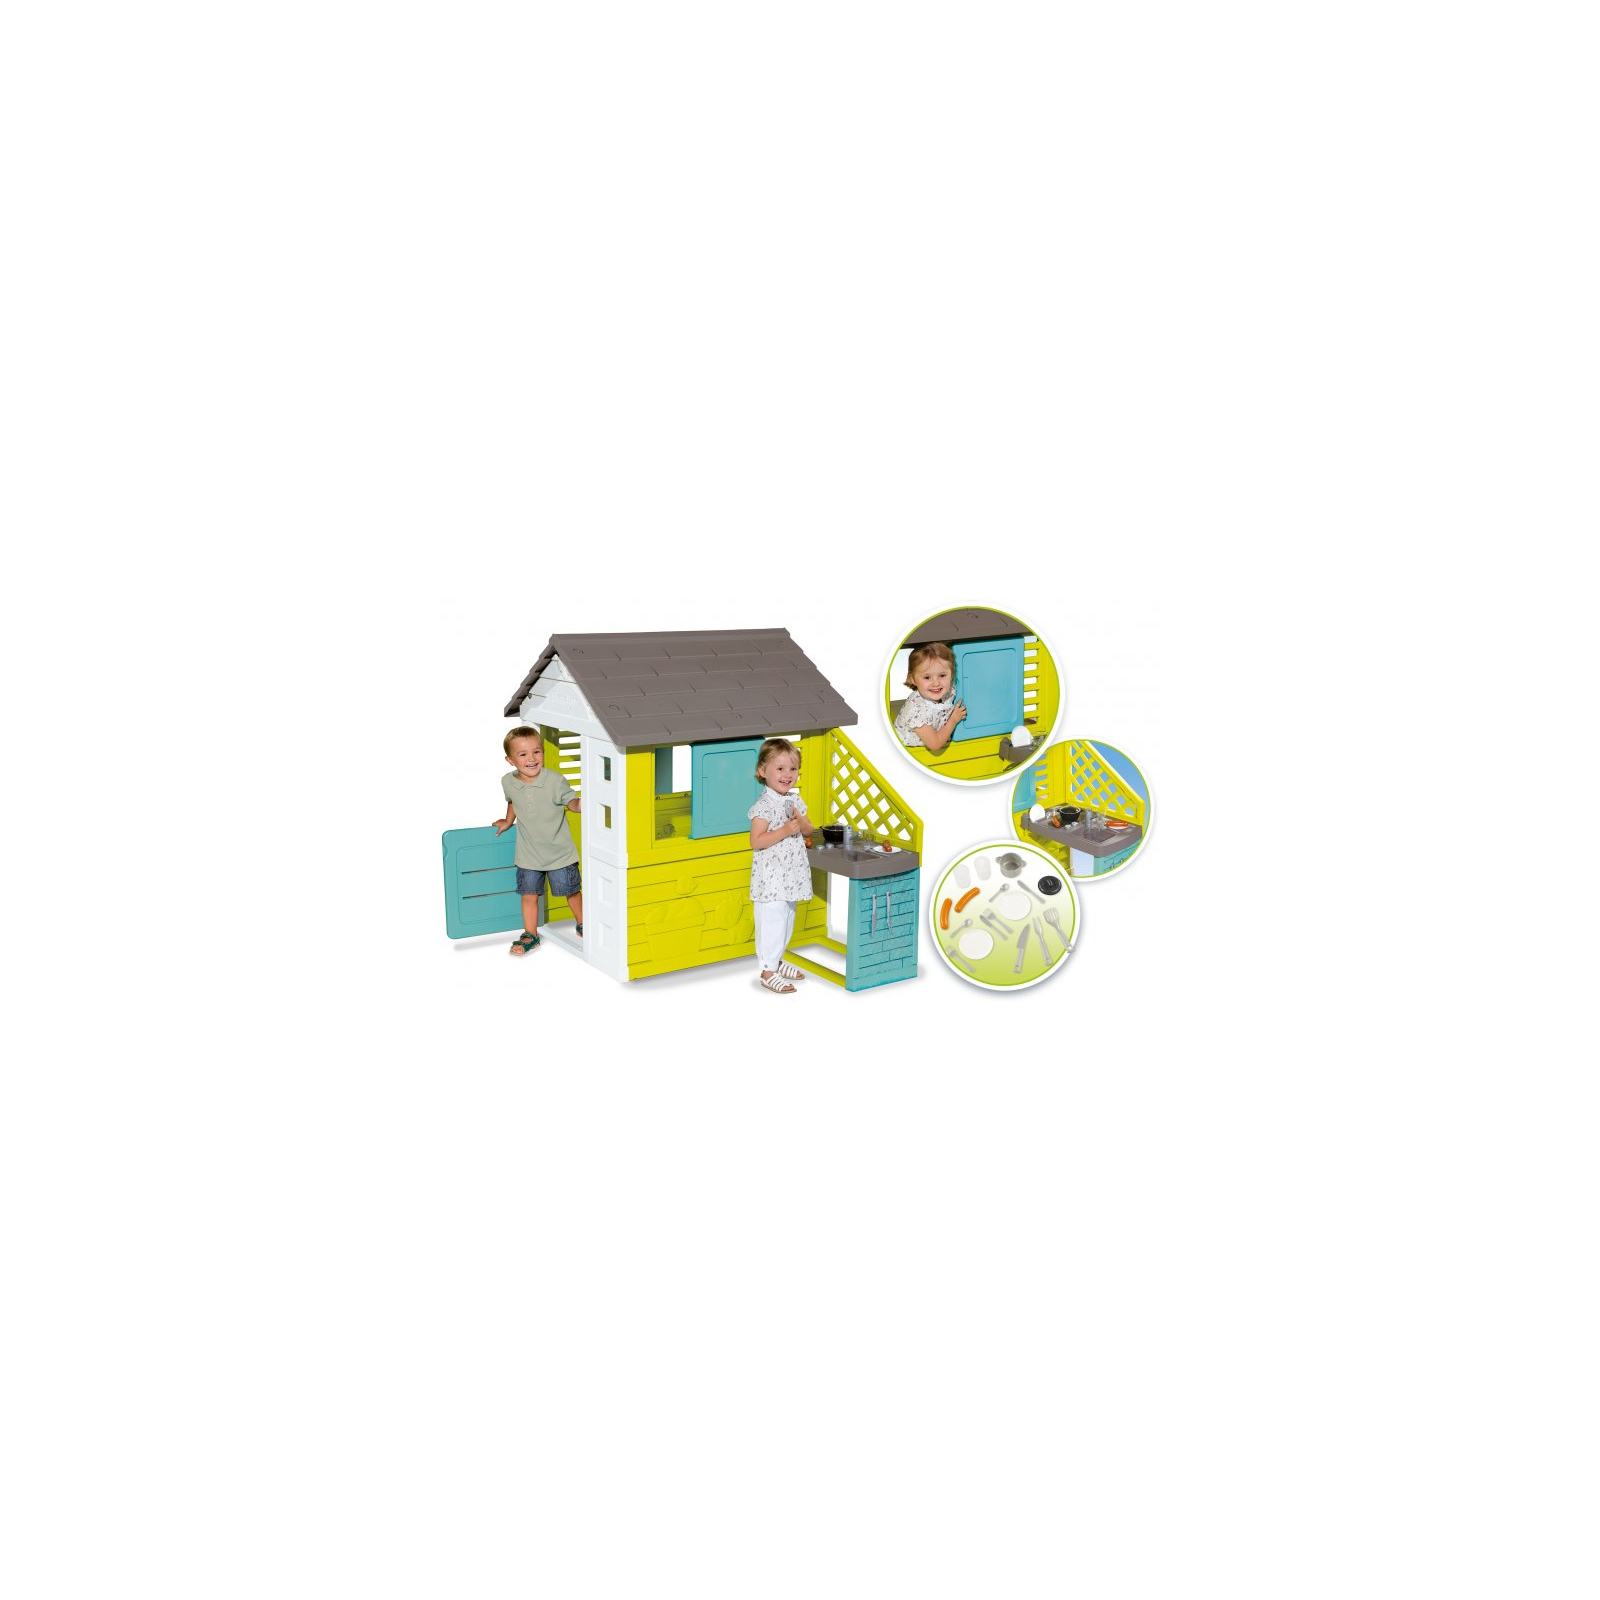 Игровой домик Smoby Радужный с летней кухней 17 аксессуаров. (810722) изображение 2